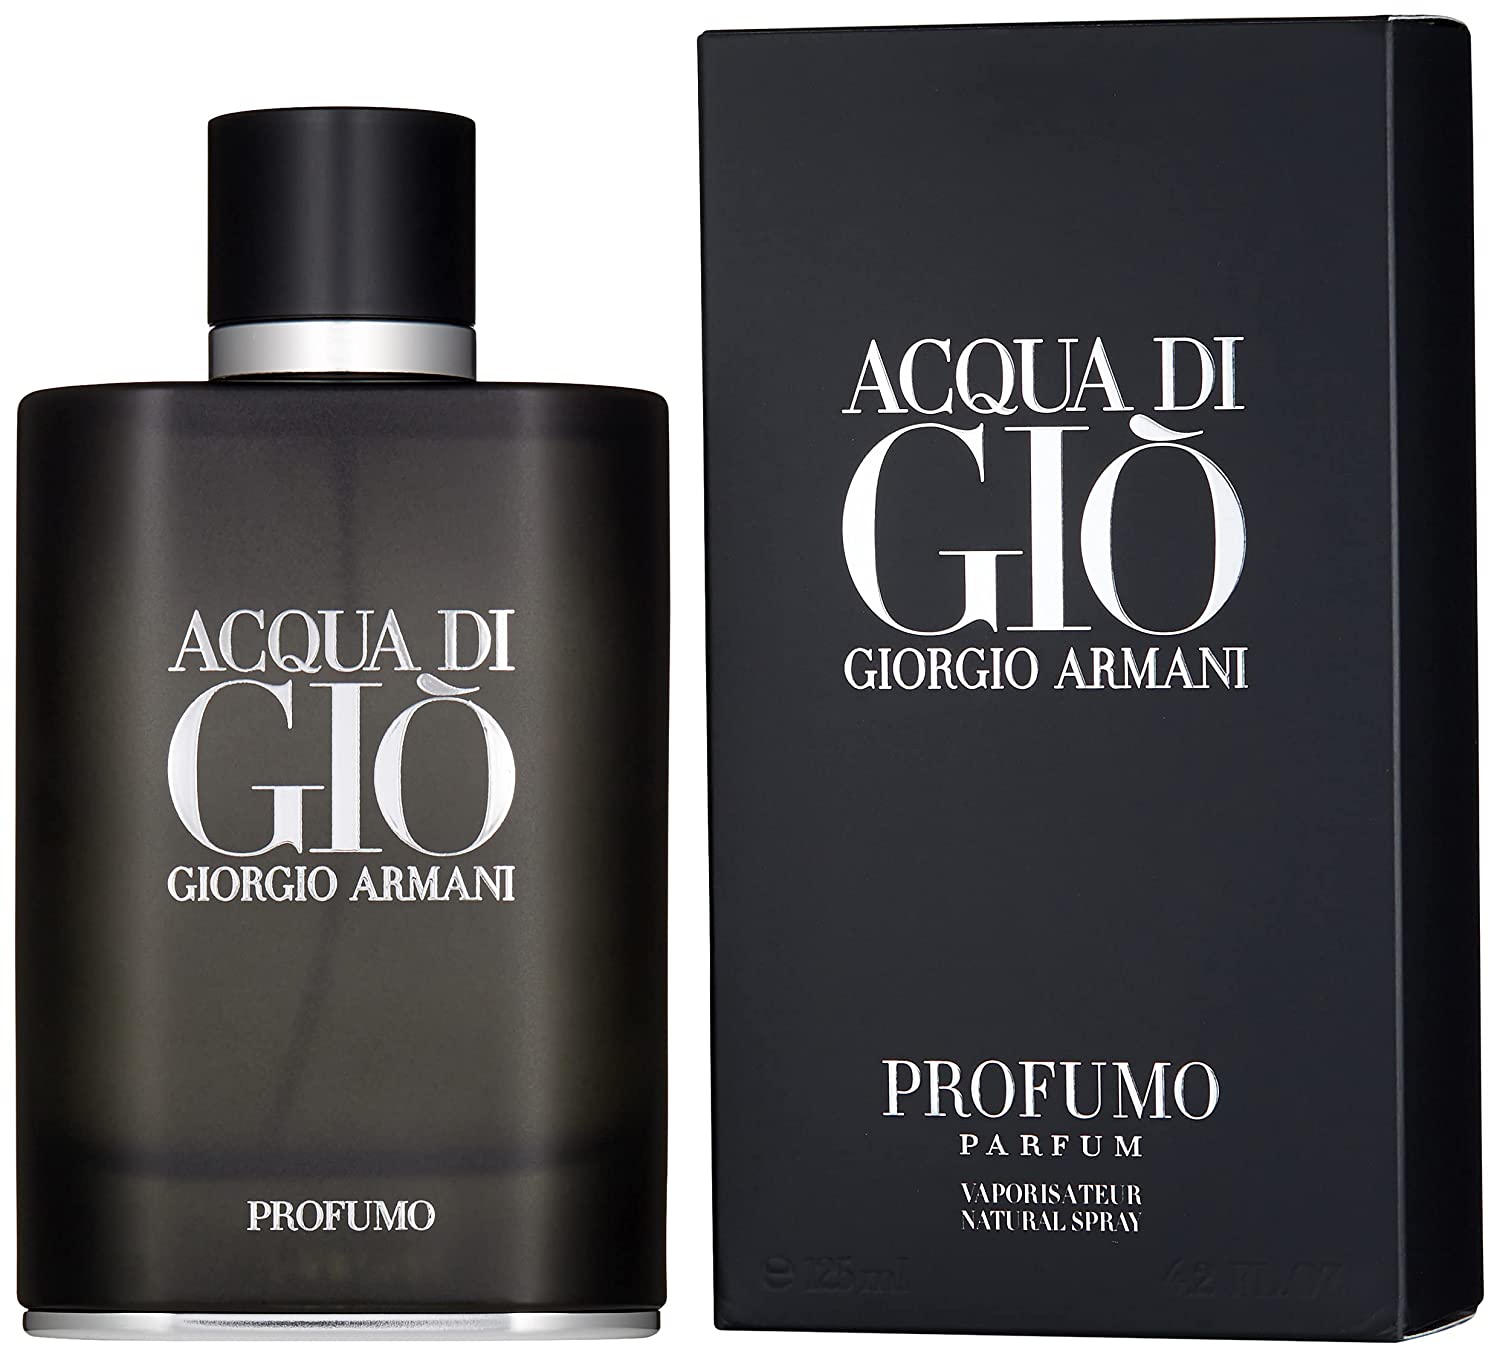 Acqua Di Gio Profumo by Giorgio Armani Parfum Spray for Men